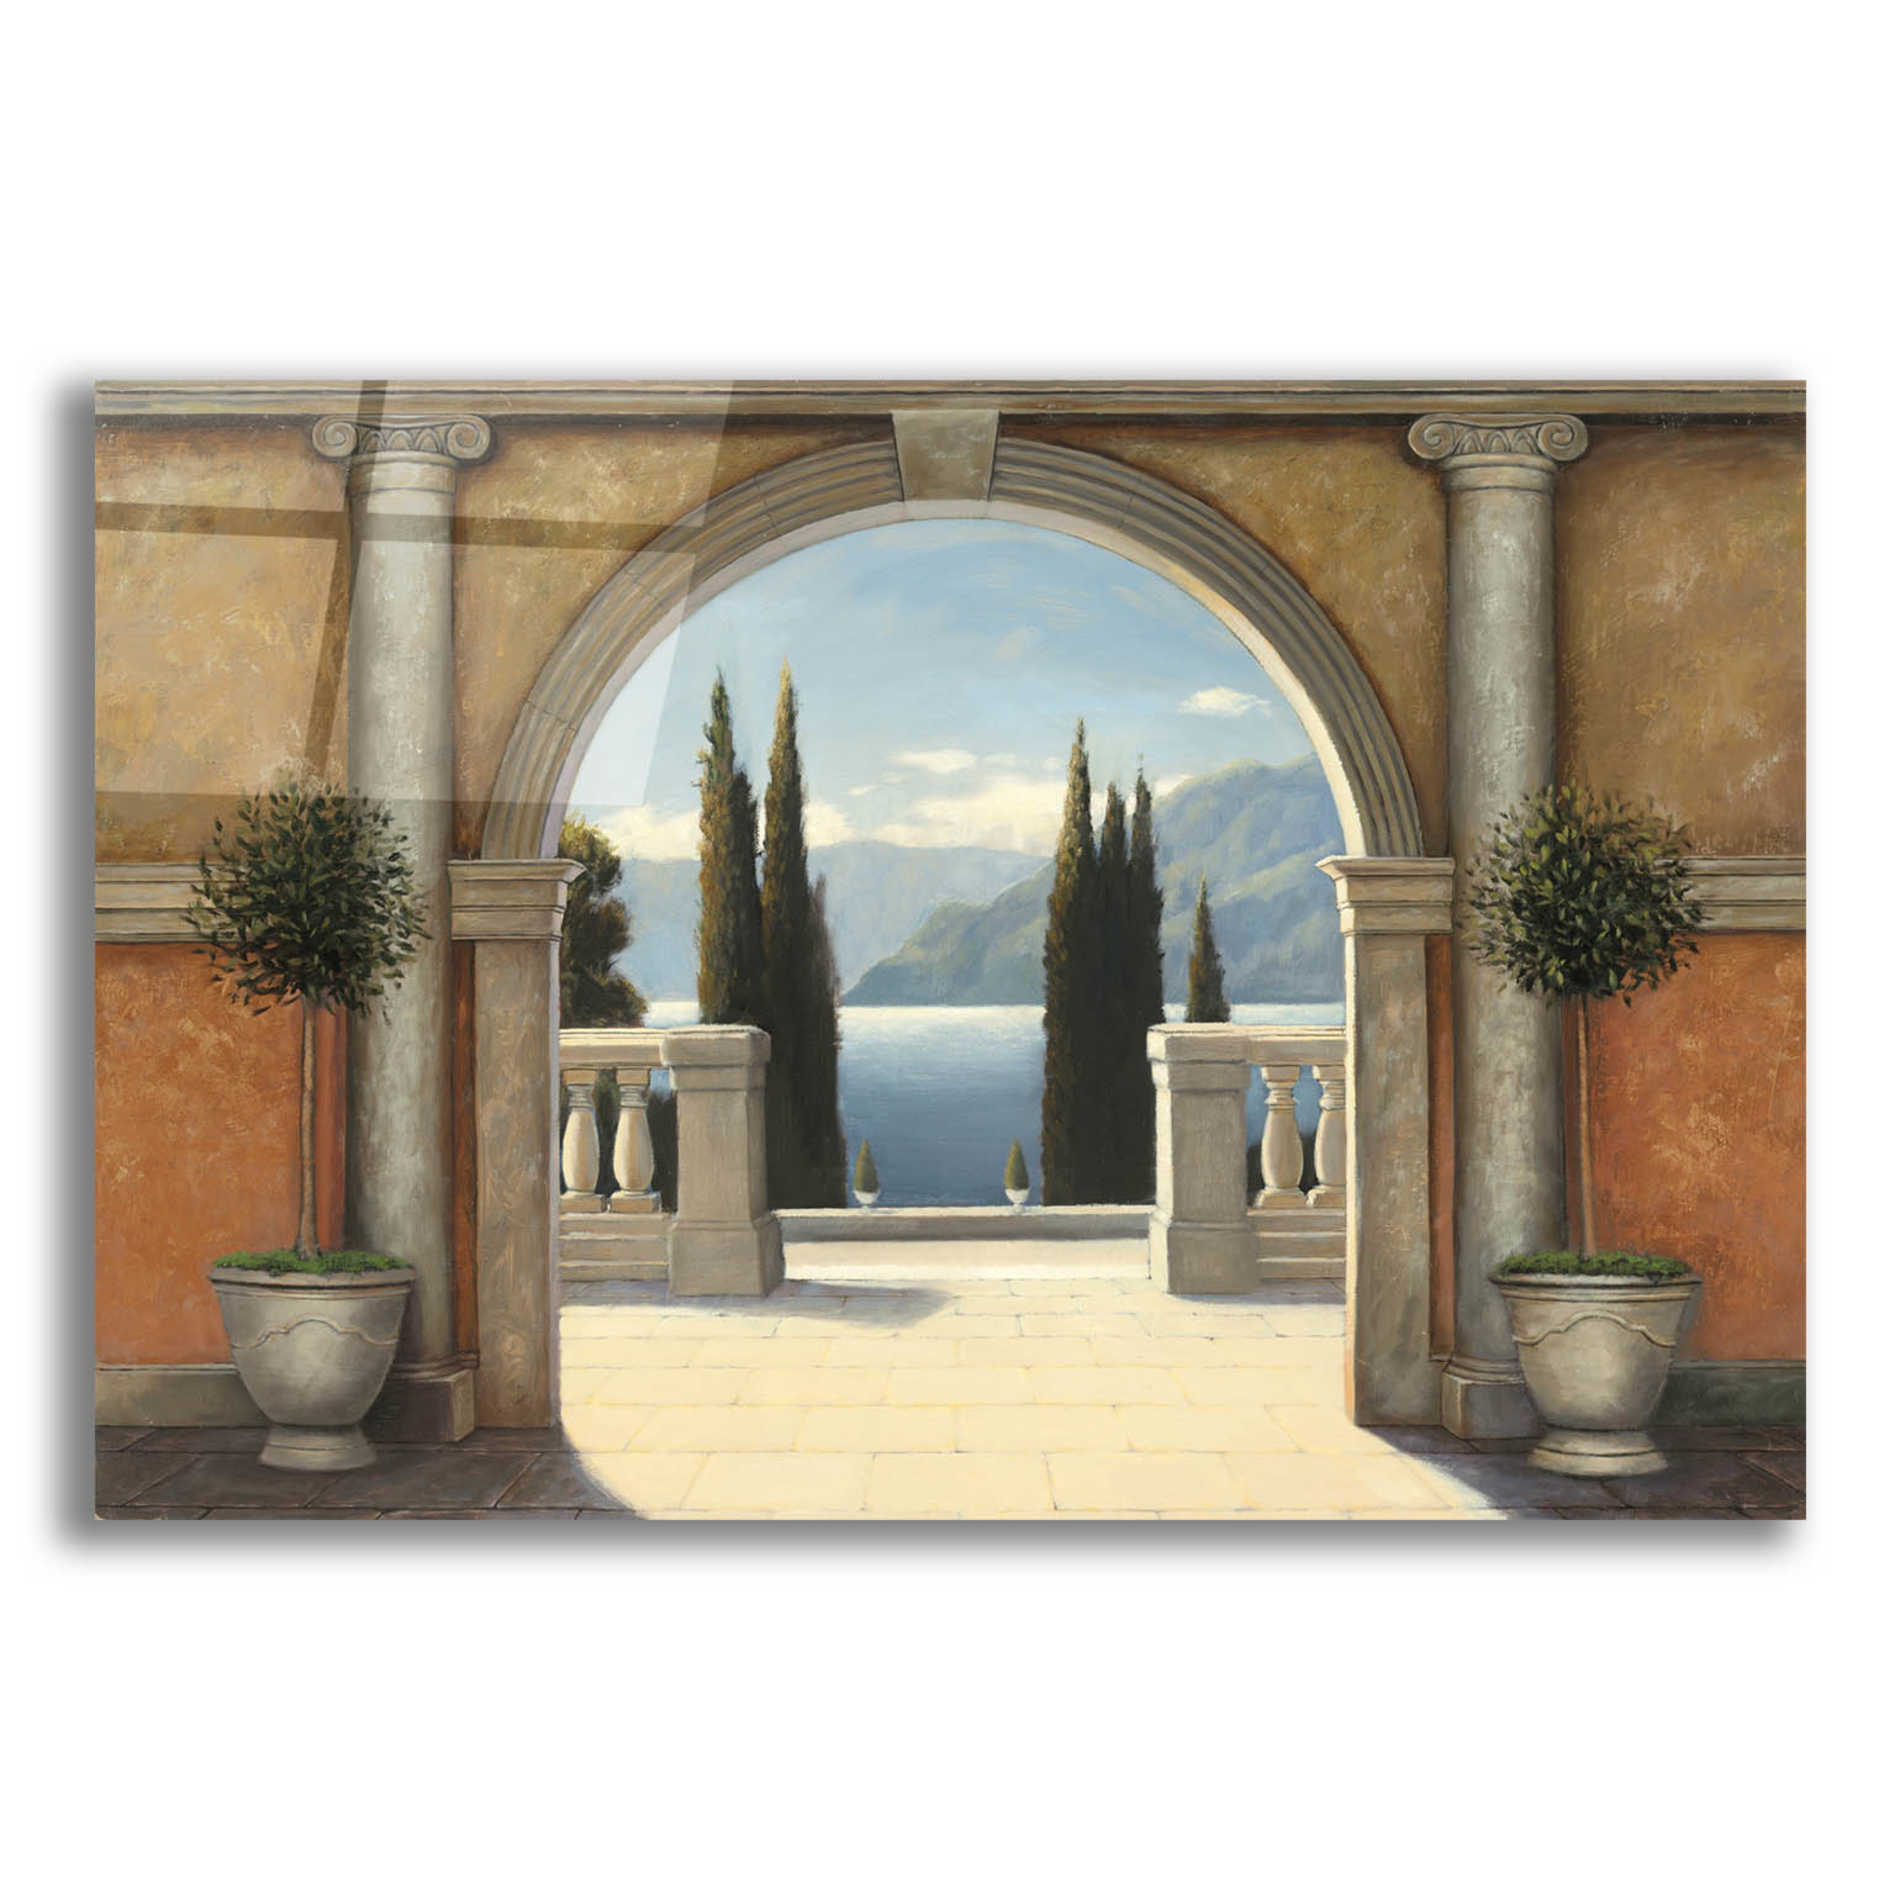 Epic Art 'Italian Balcony' by James Wiens, Acrylic Glass Wall Art,18x12x1.1x0,26x18x1.1x0,40x26x1.74x0,60x40x1.74x0